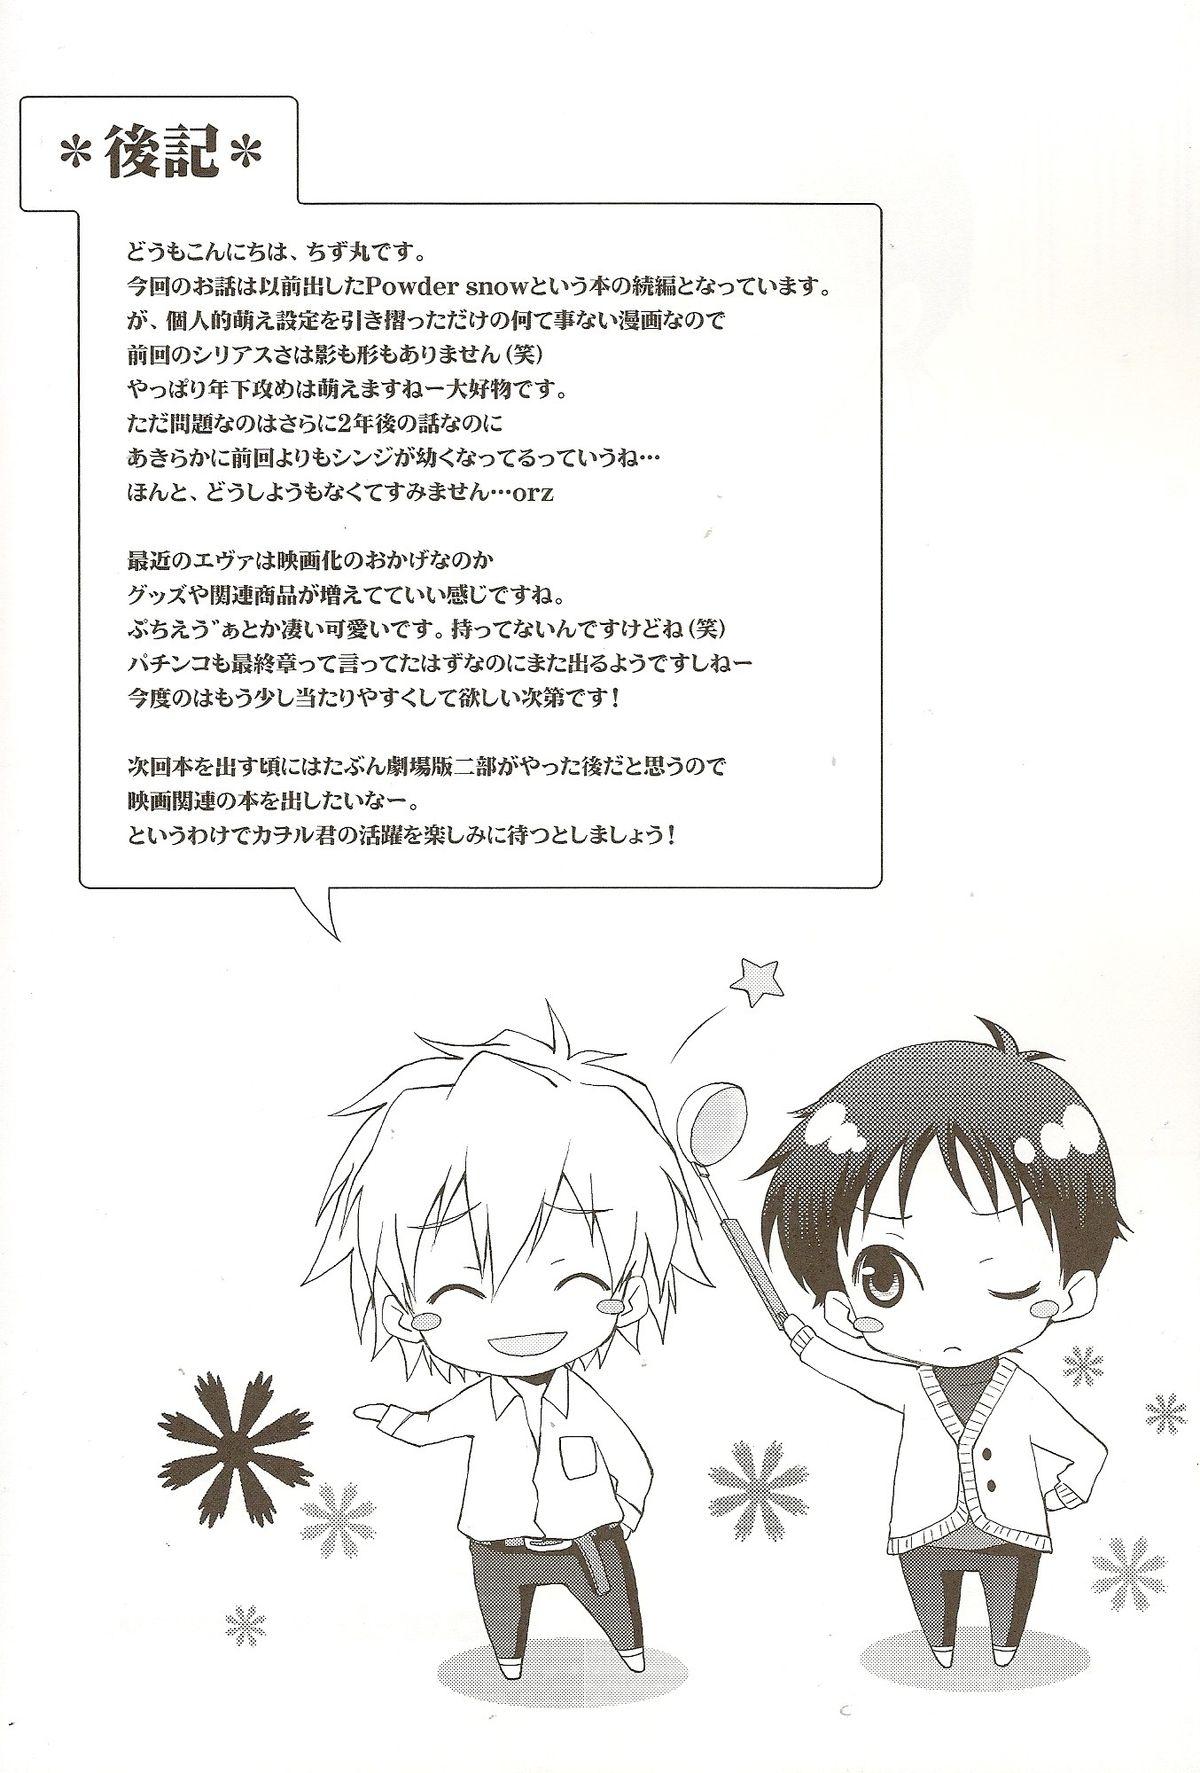 Jockstrap Powder snow... no tsuzuki! - Neon genesis evangelion Officesex - Page 33